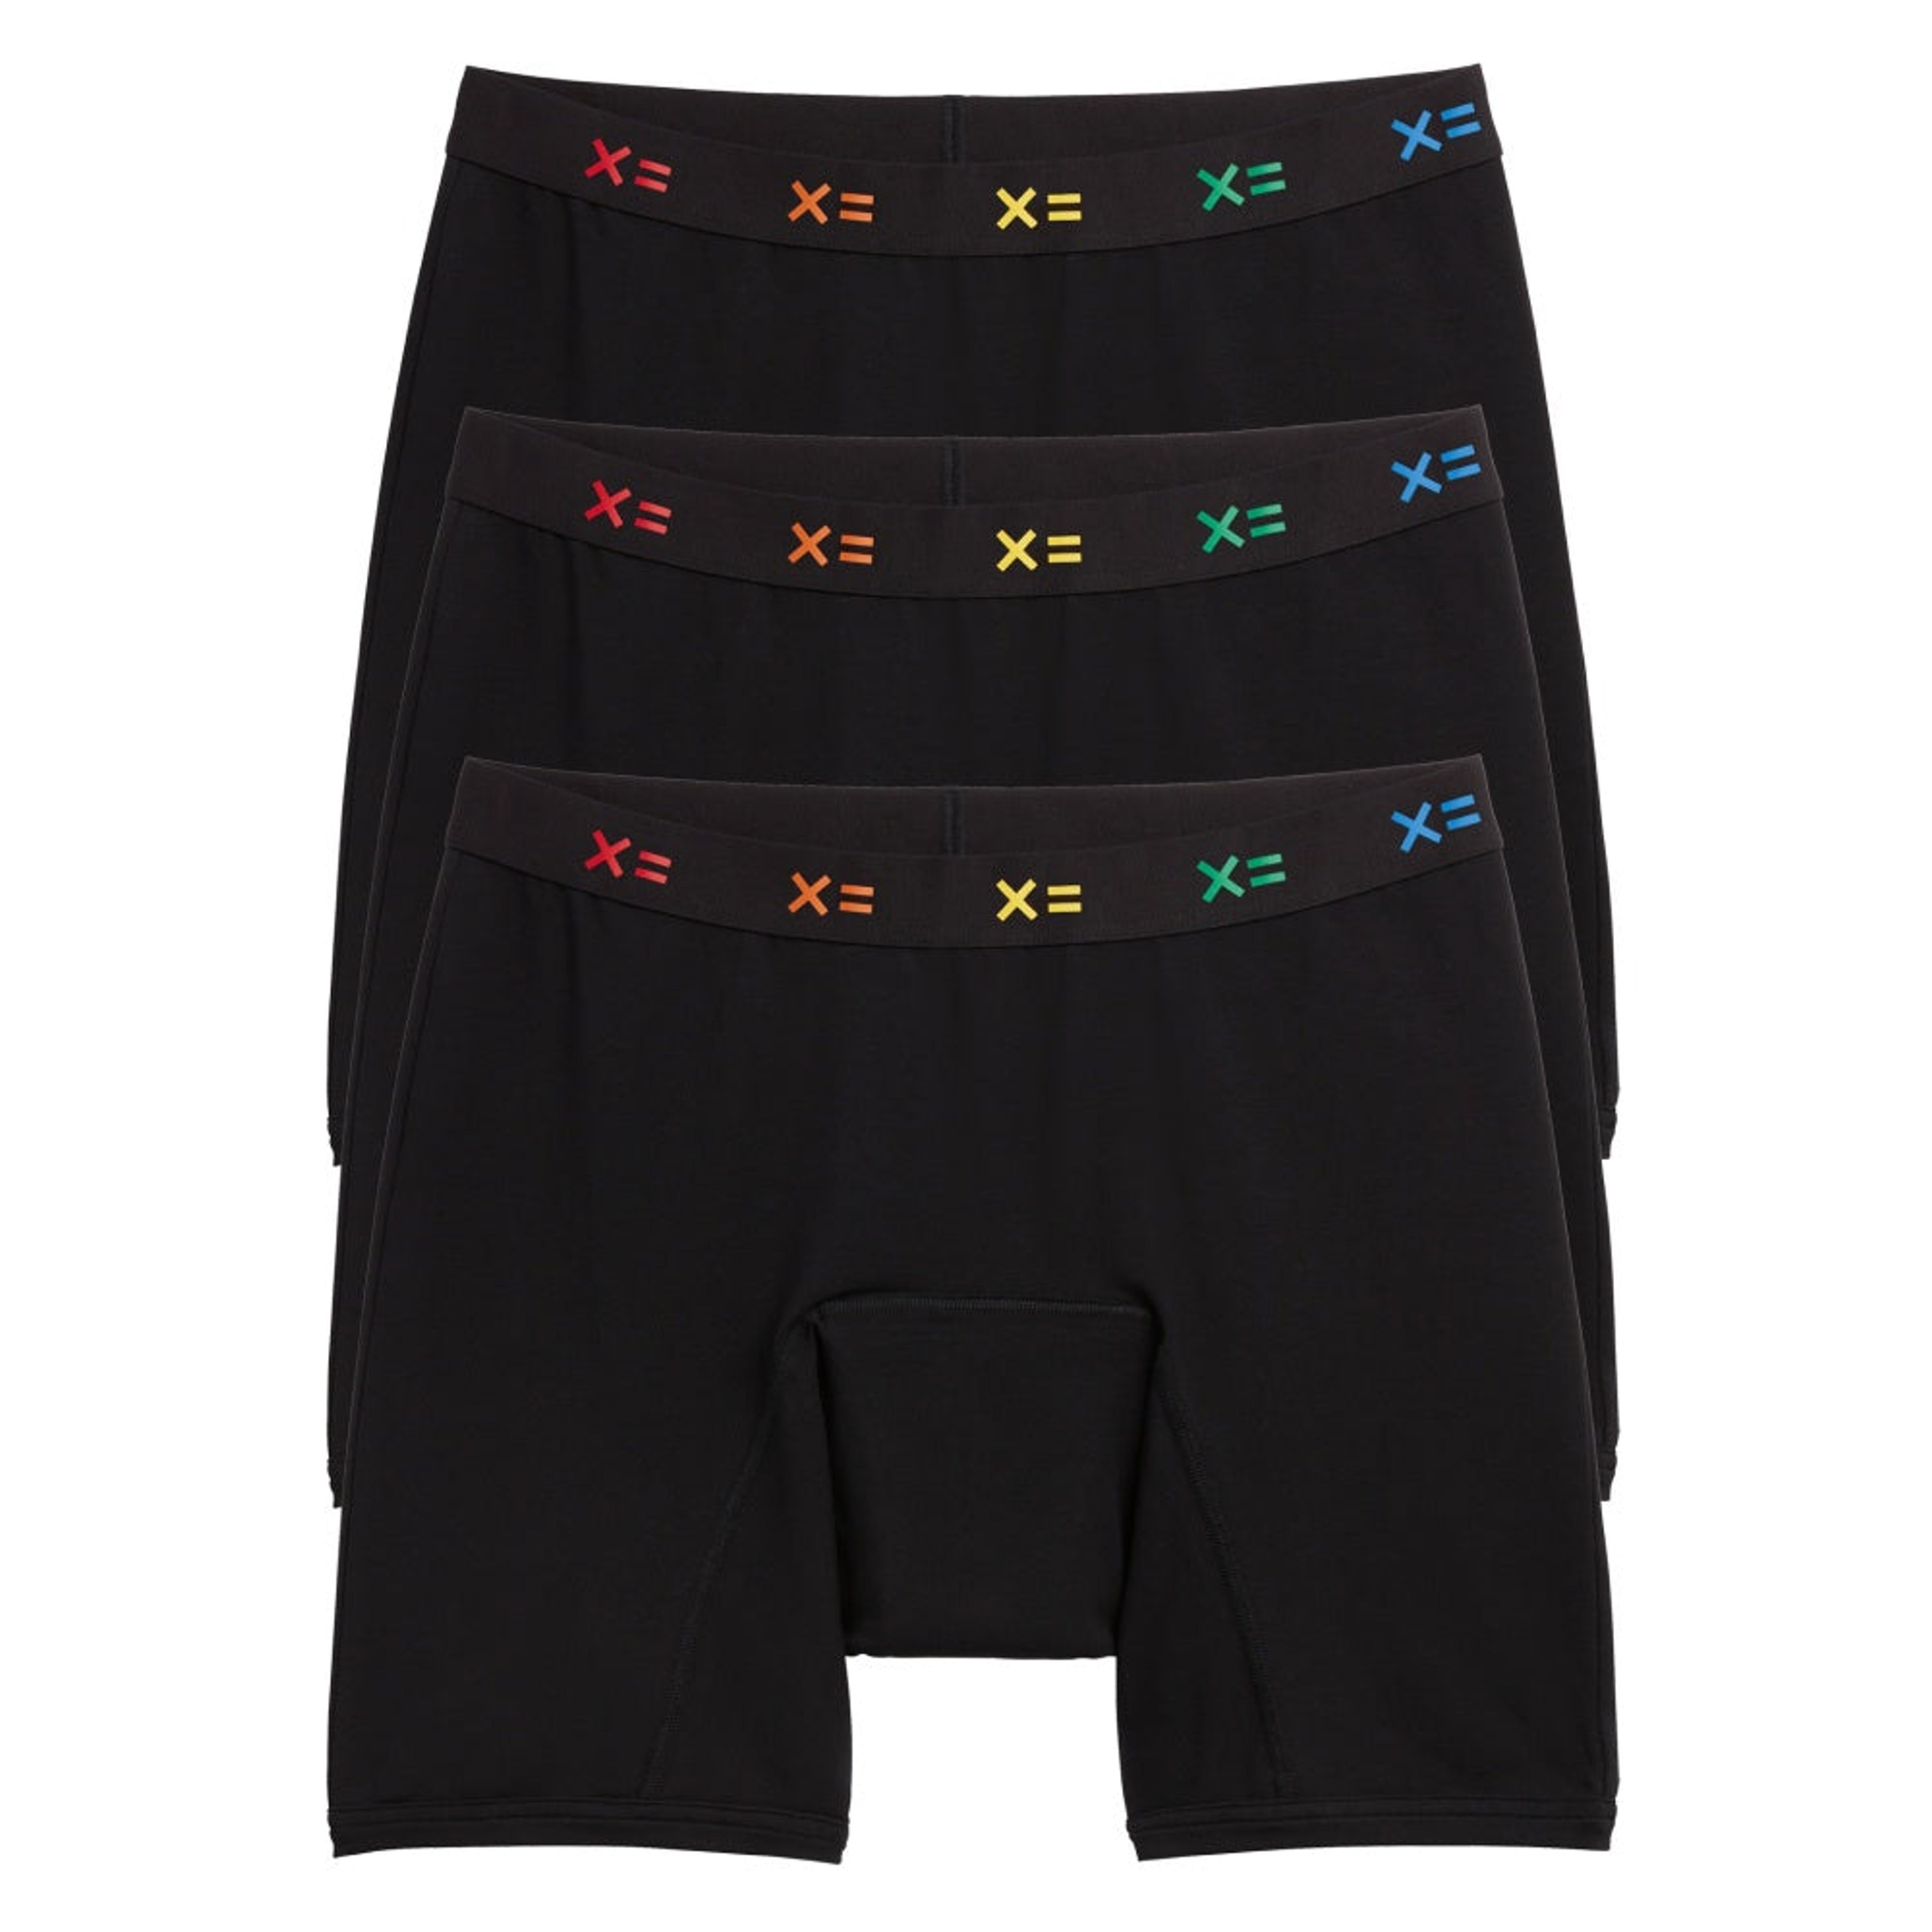 Tomboyx Boxer Briefs Underwear, 4.5 Inseam, Cotton Stretch